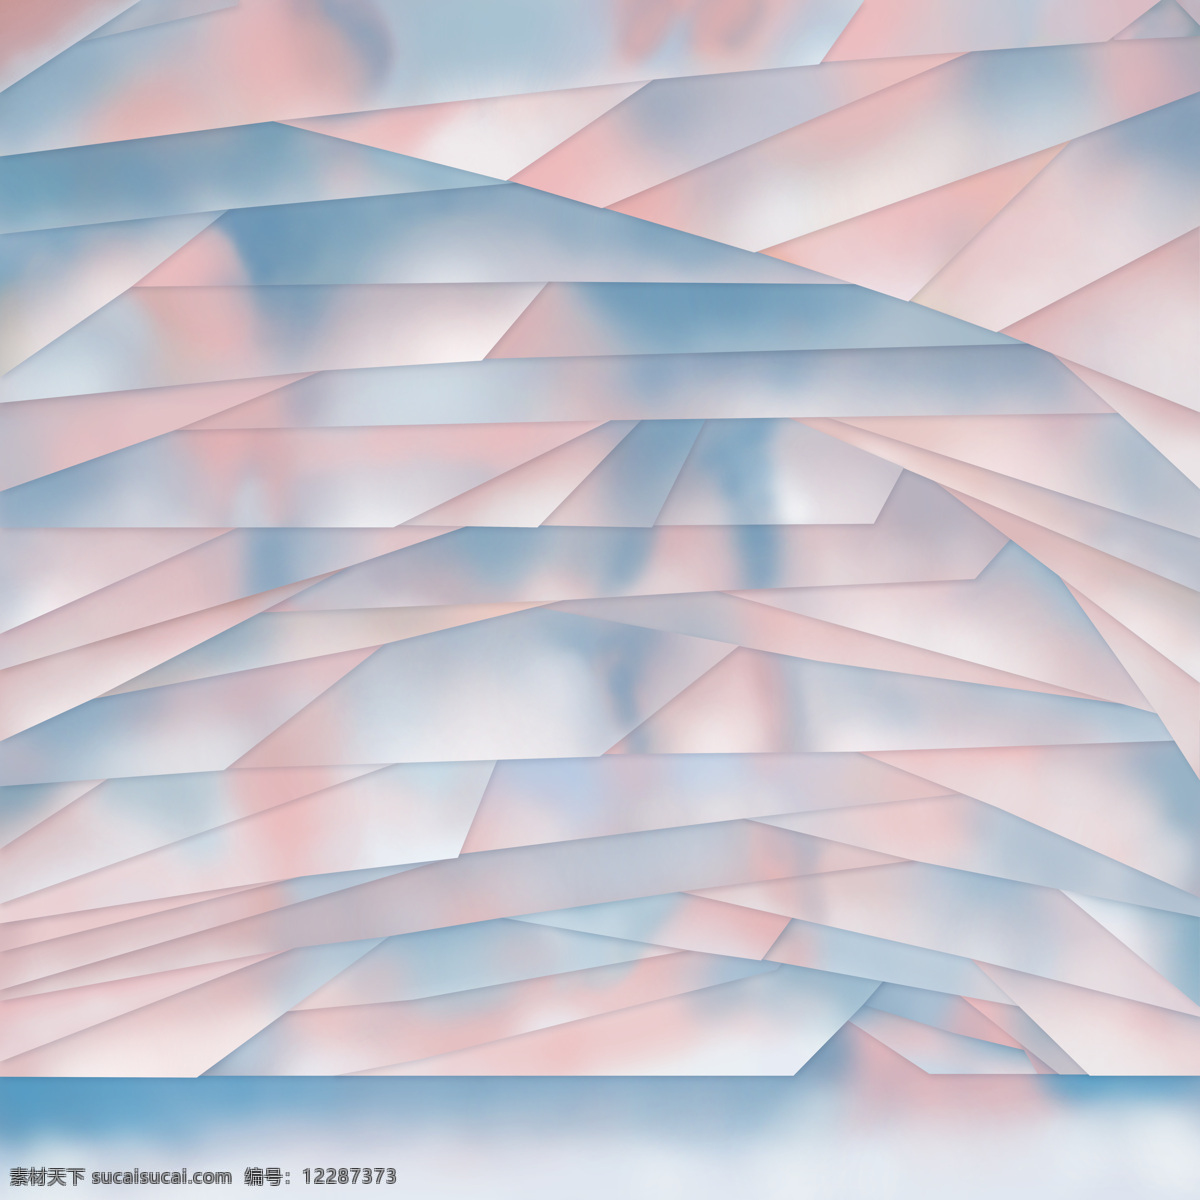 原创 现代 简约 几何 低 饱和度 色彩 图 抽象 淡雅 小清新 粉色系 底纹边框 背景底纹